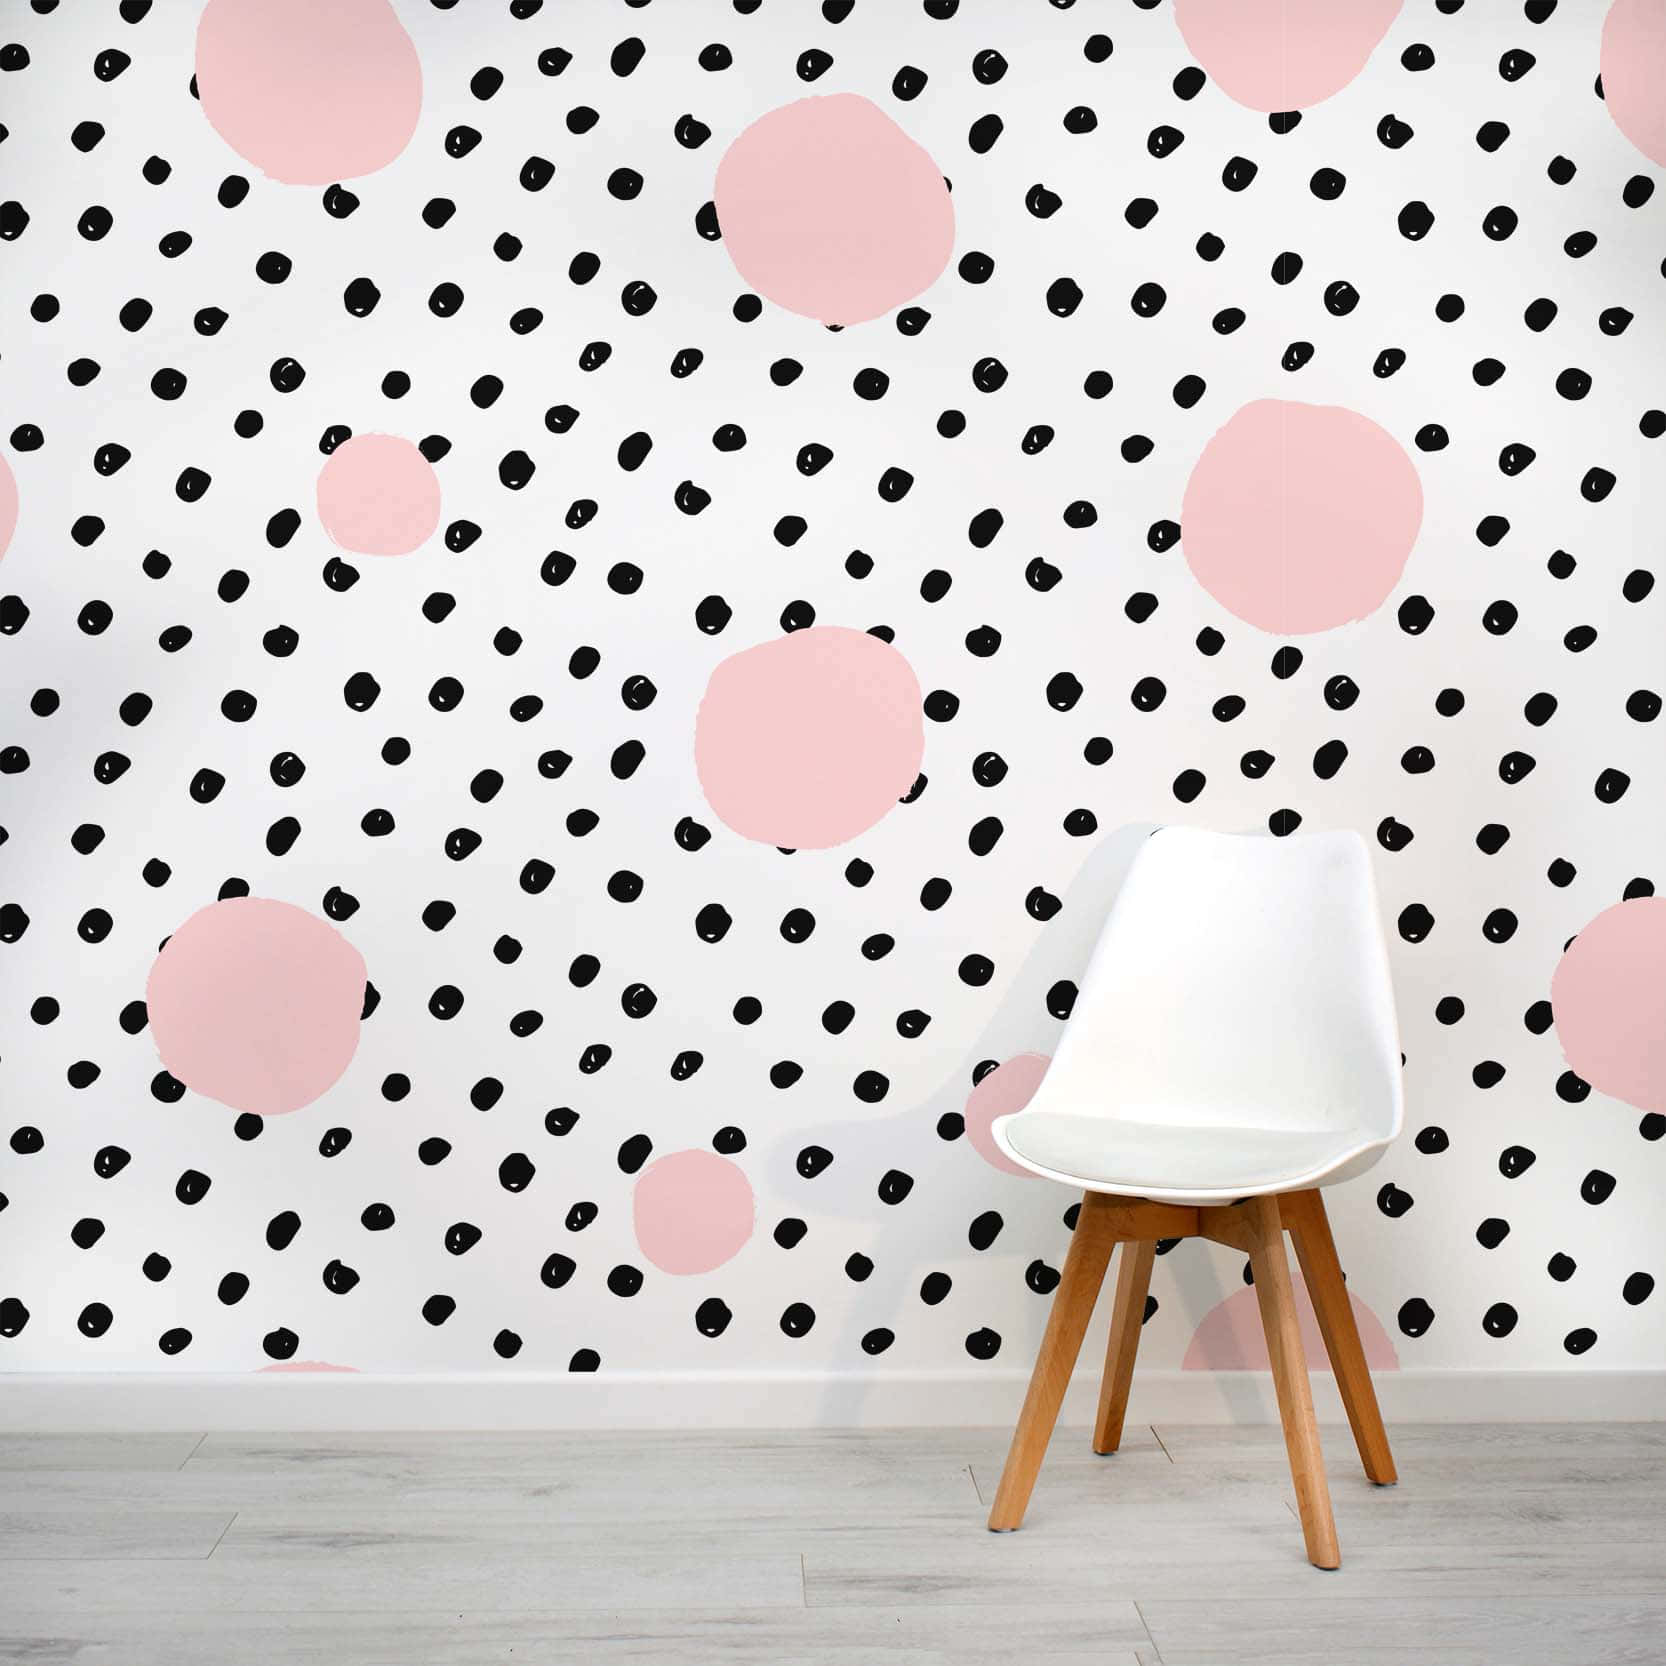 En pink og hvid mønster af polka prikker. Wallpaper